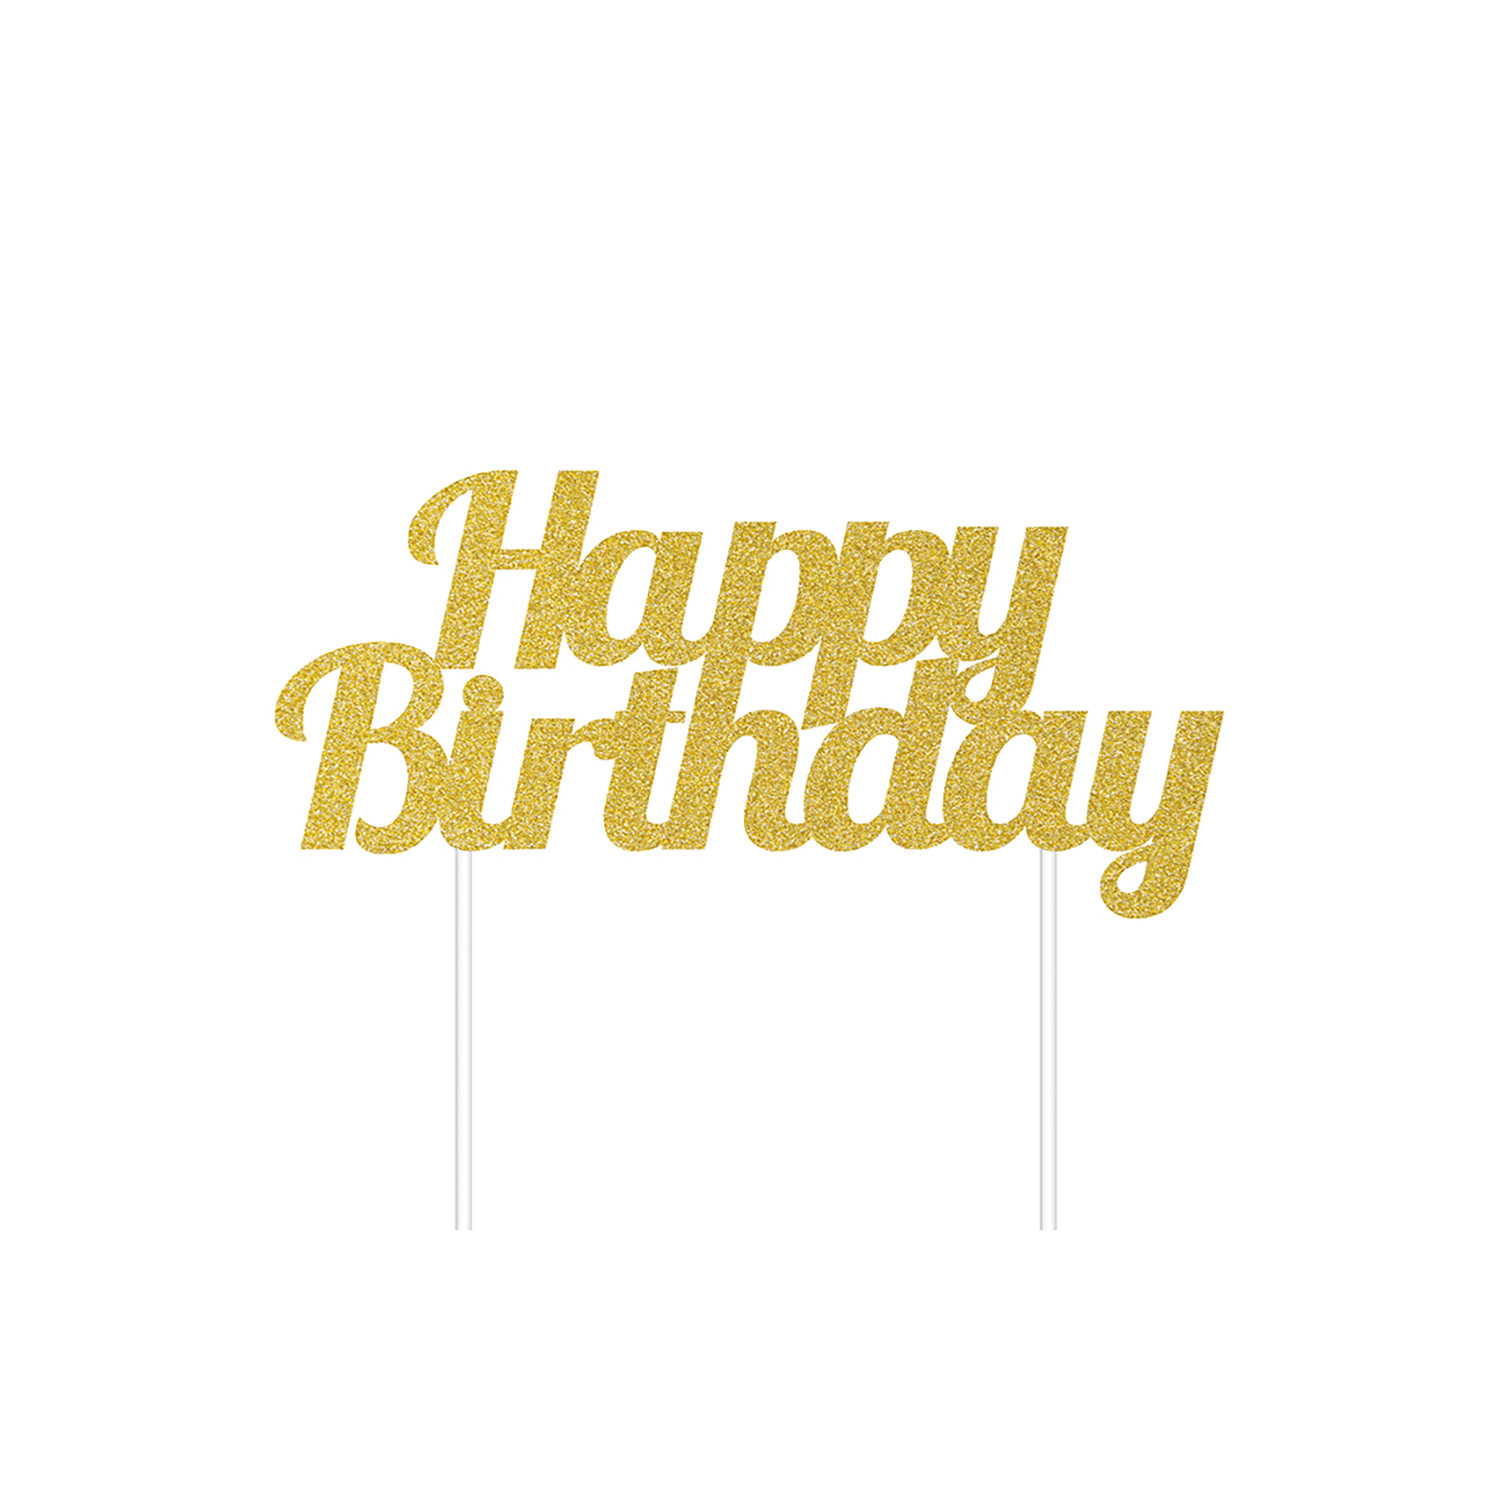 Gold Happy Birthday Cake Topper
 Glitter Happy Birthday Gold Cake Topper Home Store More